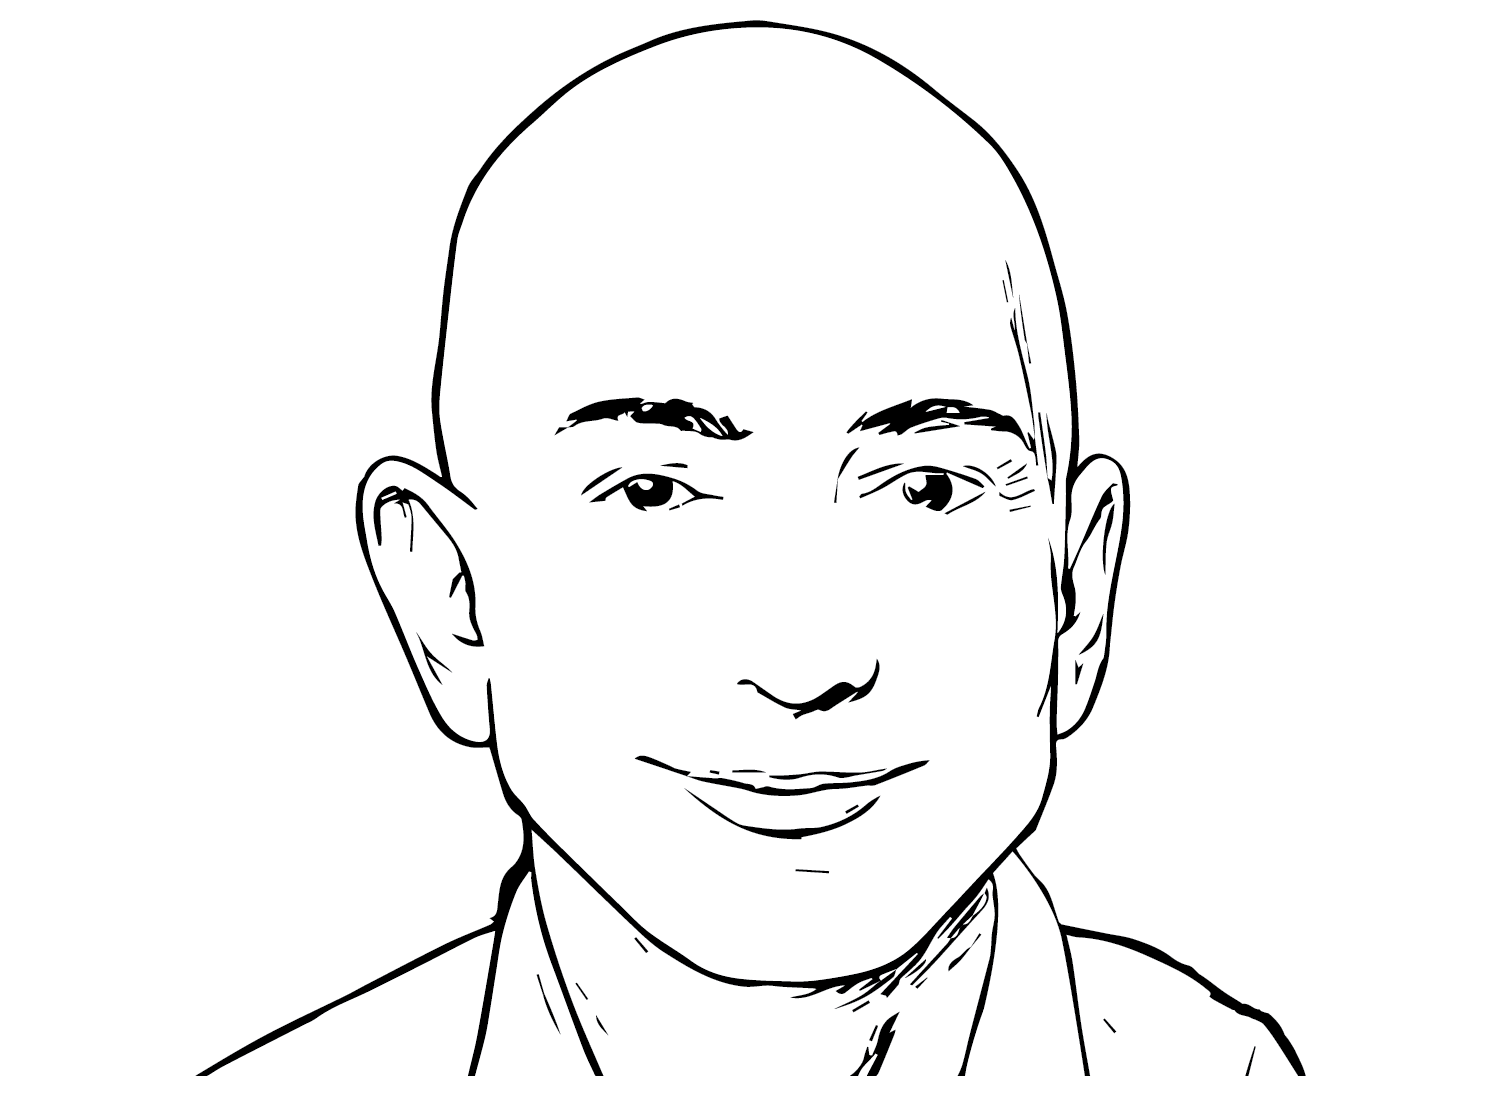 Drawing Jeff Bezos from Jeff Bezos